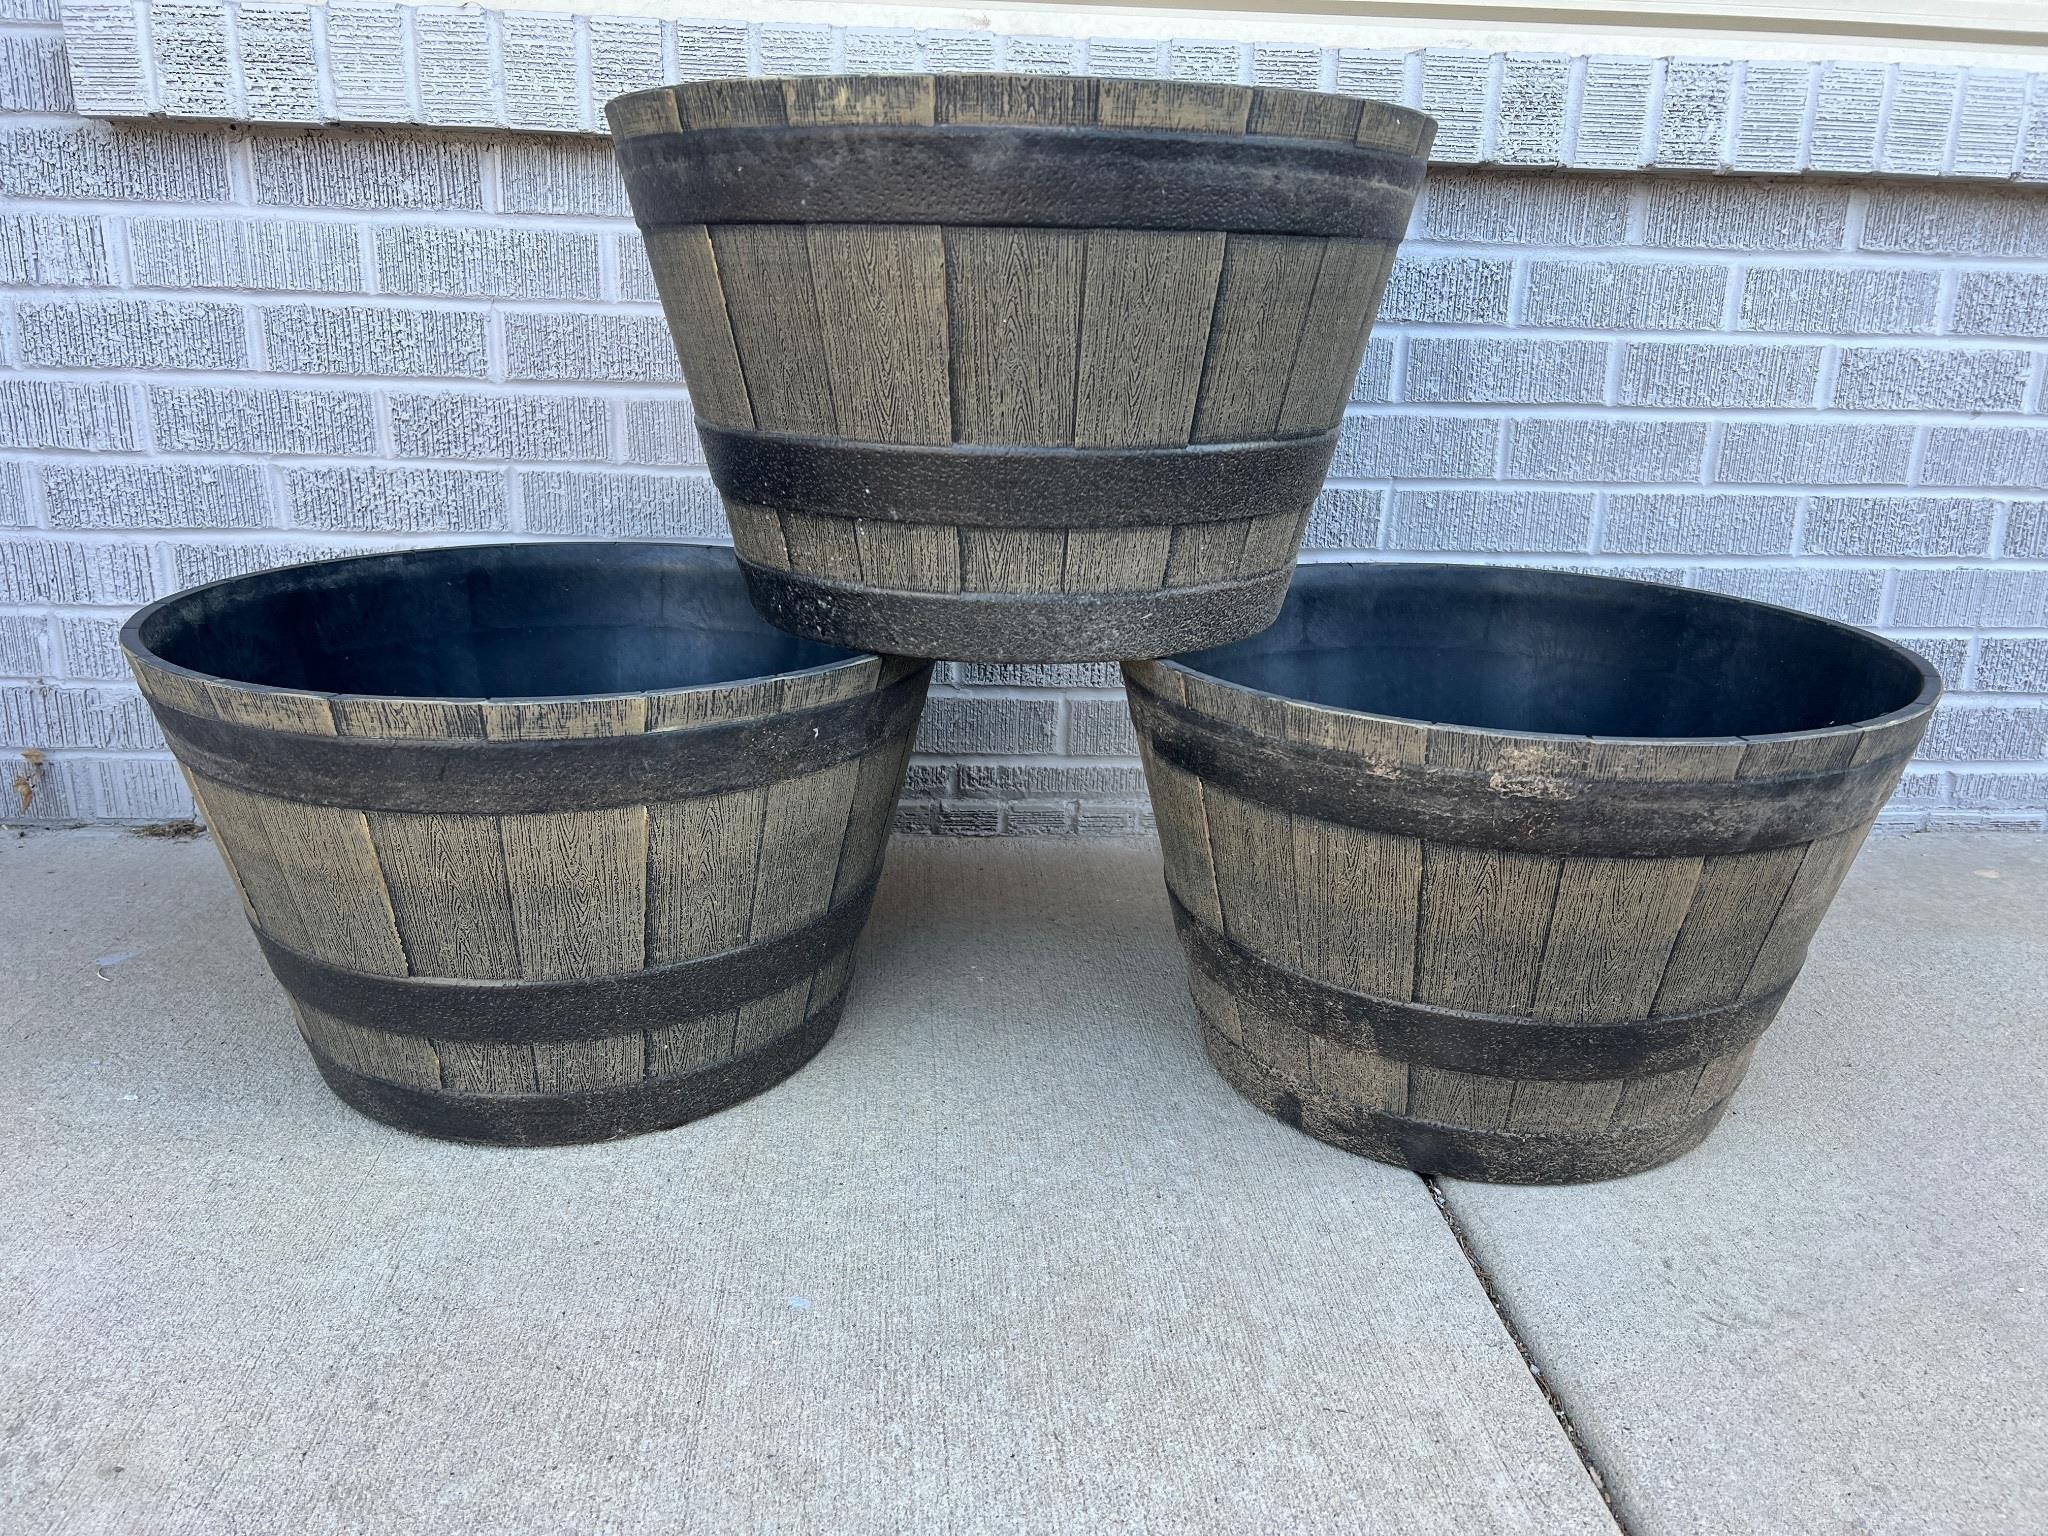 3 large plastic 20” barrel planters used